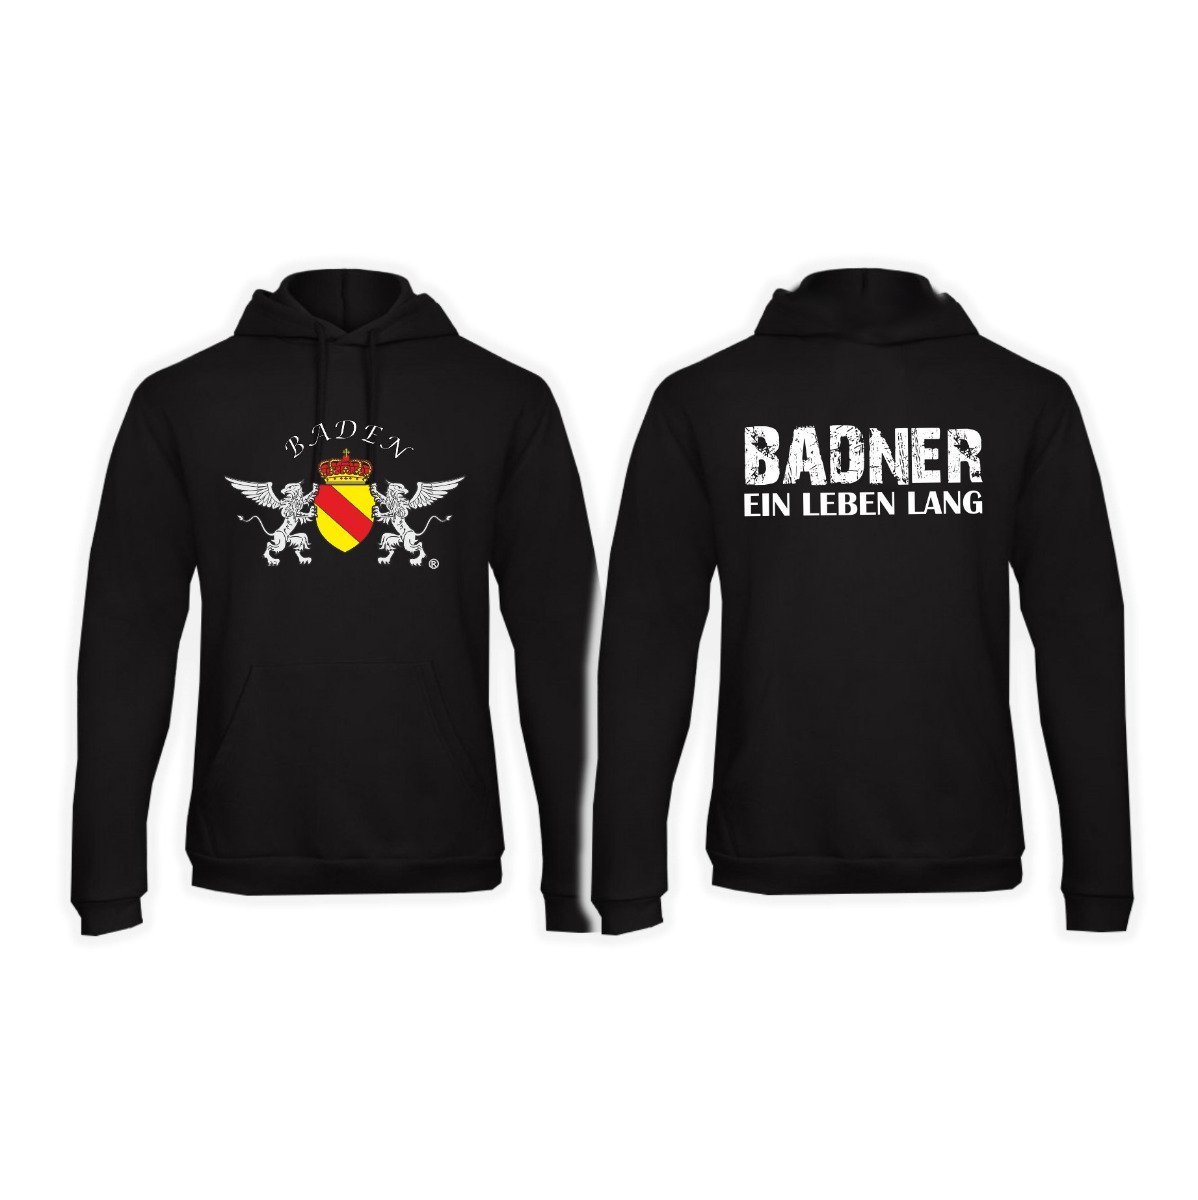 Kapuzen Sweat-Shirt "Baden - Badner ein Leben lang"